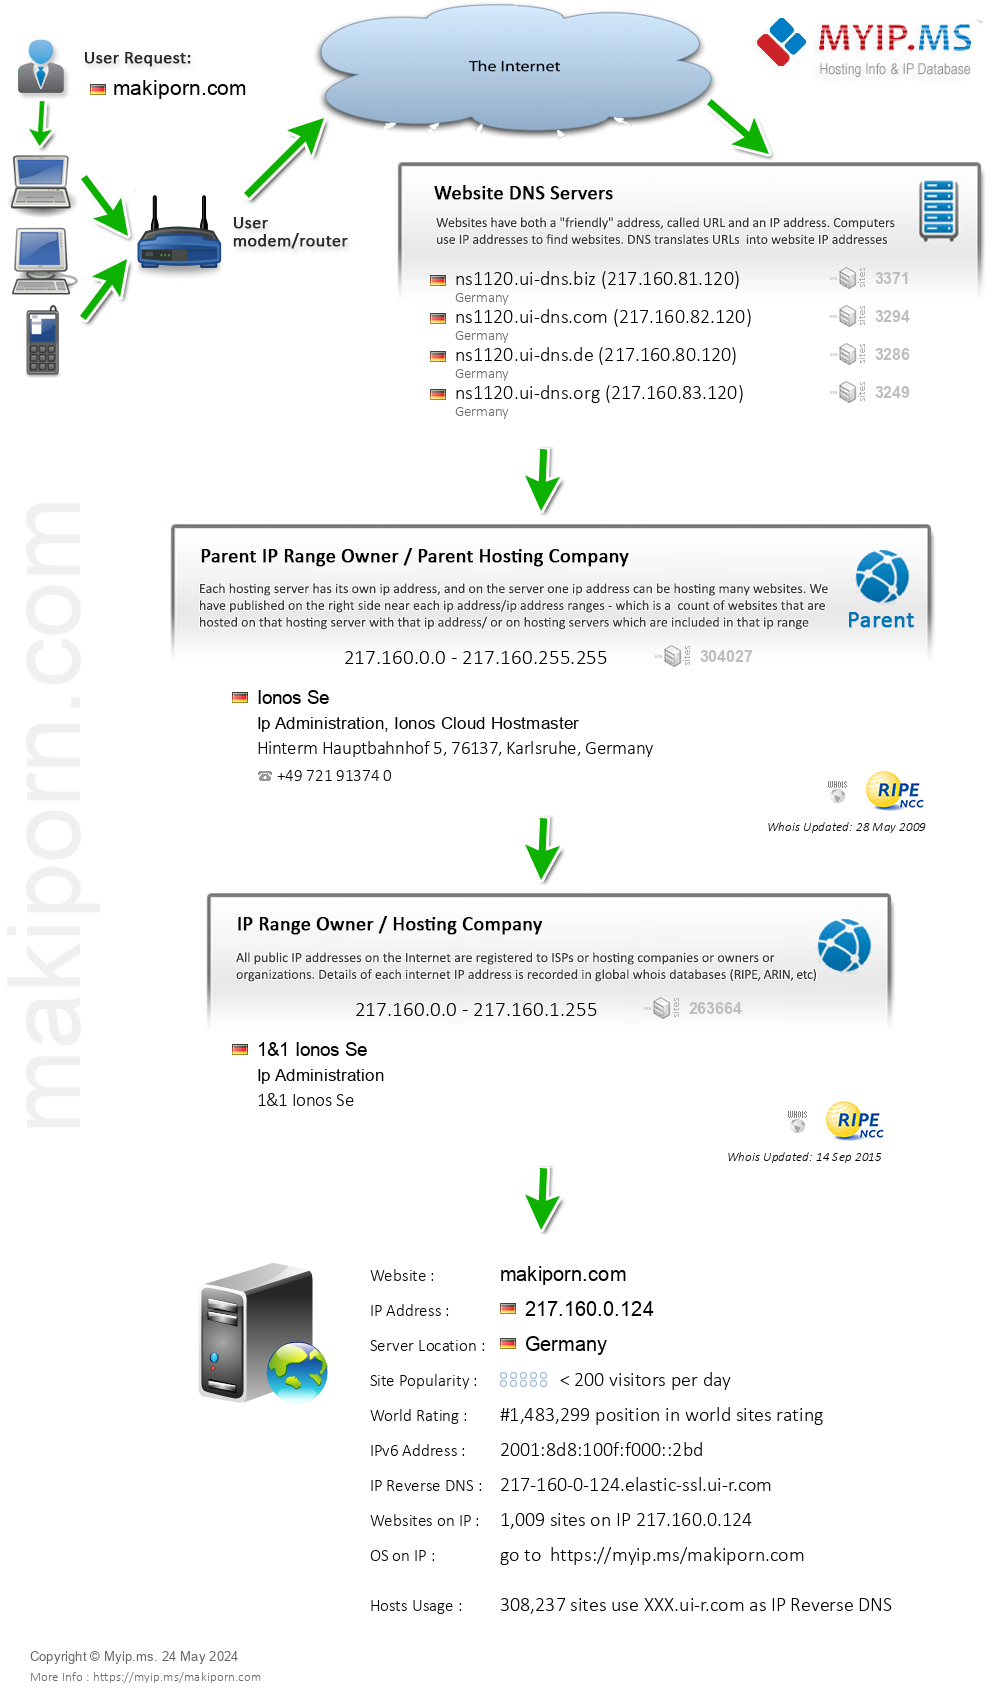 Makiporn.com - Website Hosting Visual IP Diagram